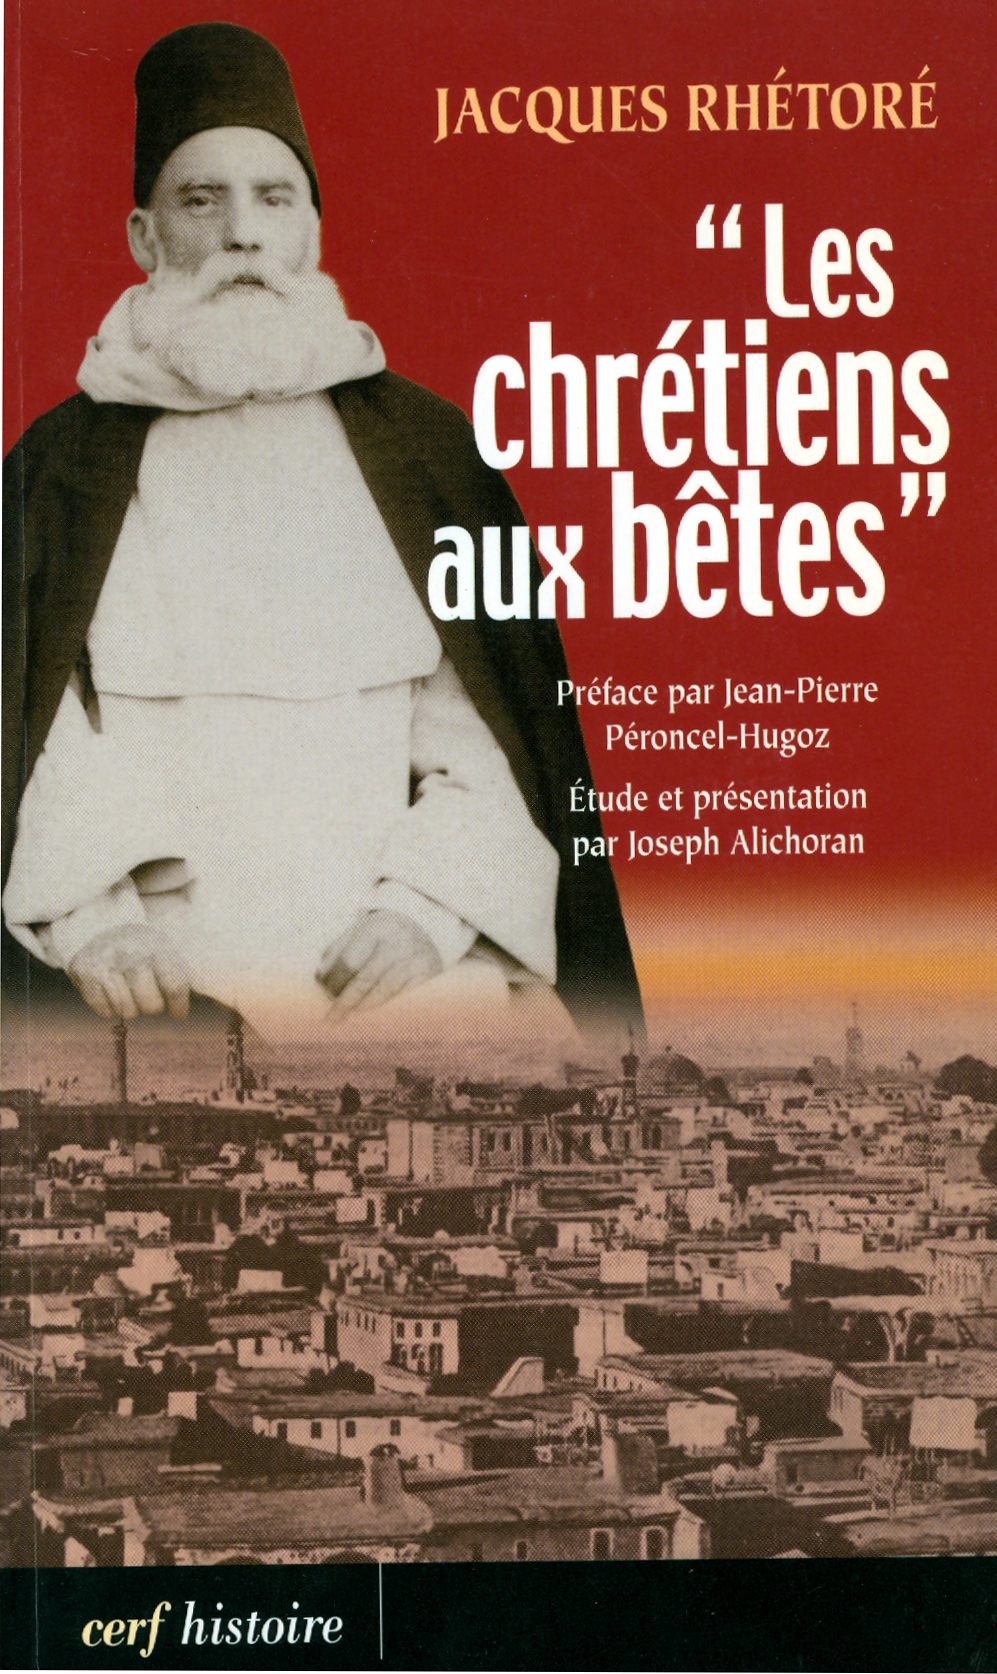 P. Jacques Rhétoré o. p. (couverture du livre)